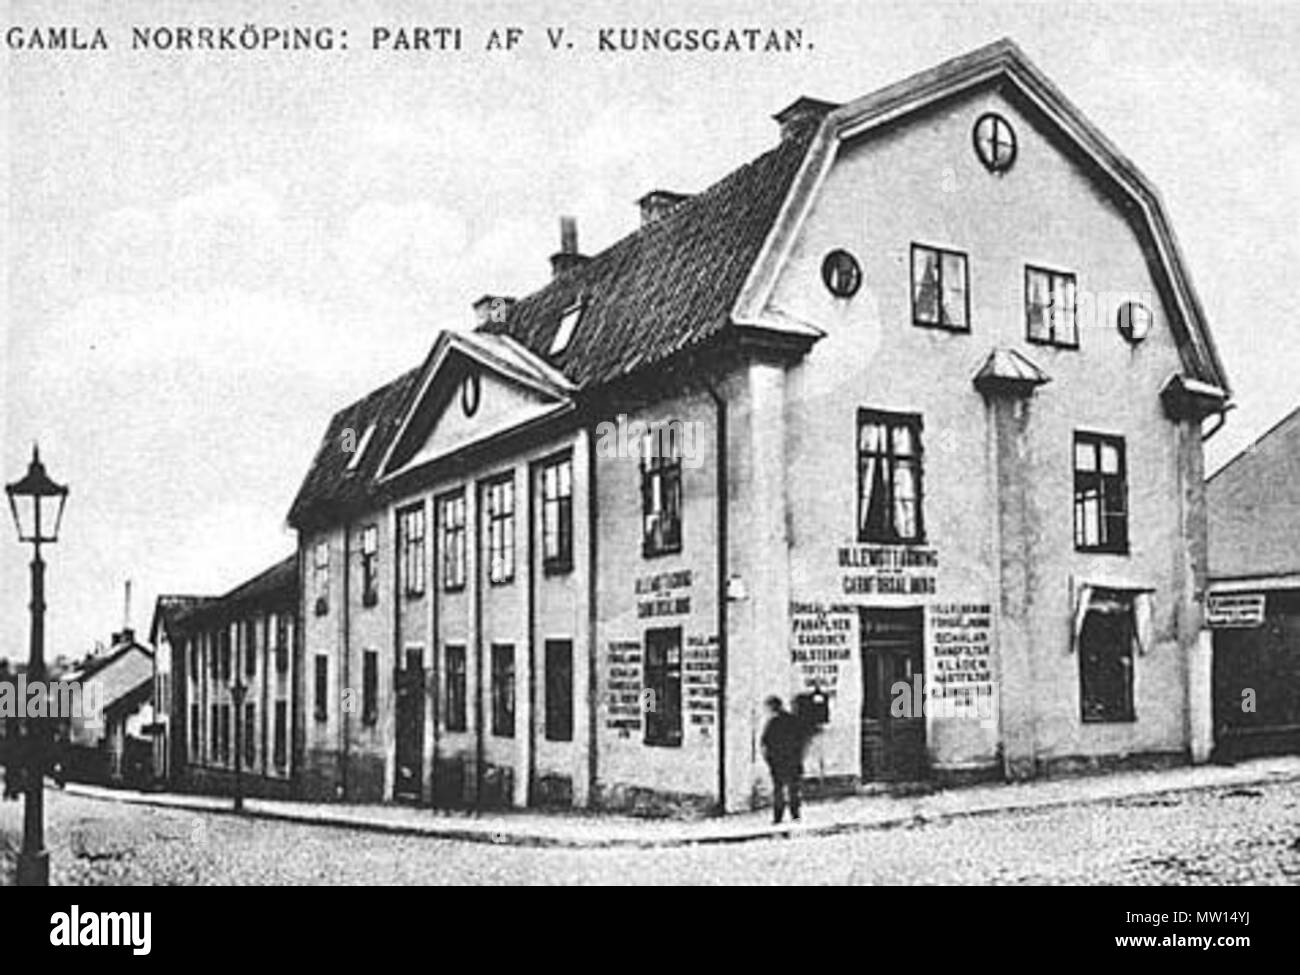 448 Norrköping, Västra Kungsgatan i början av 1900-talet Stock Photo